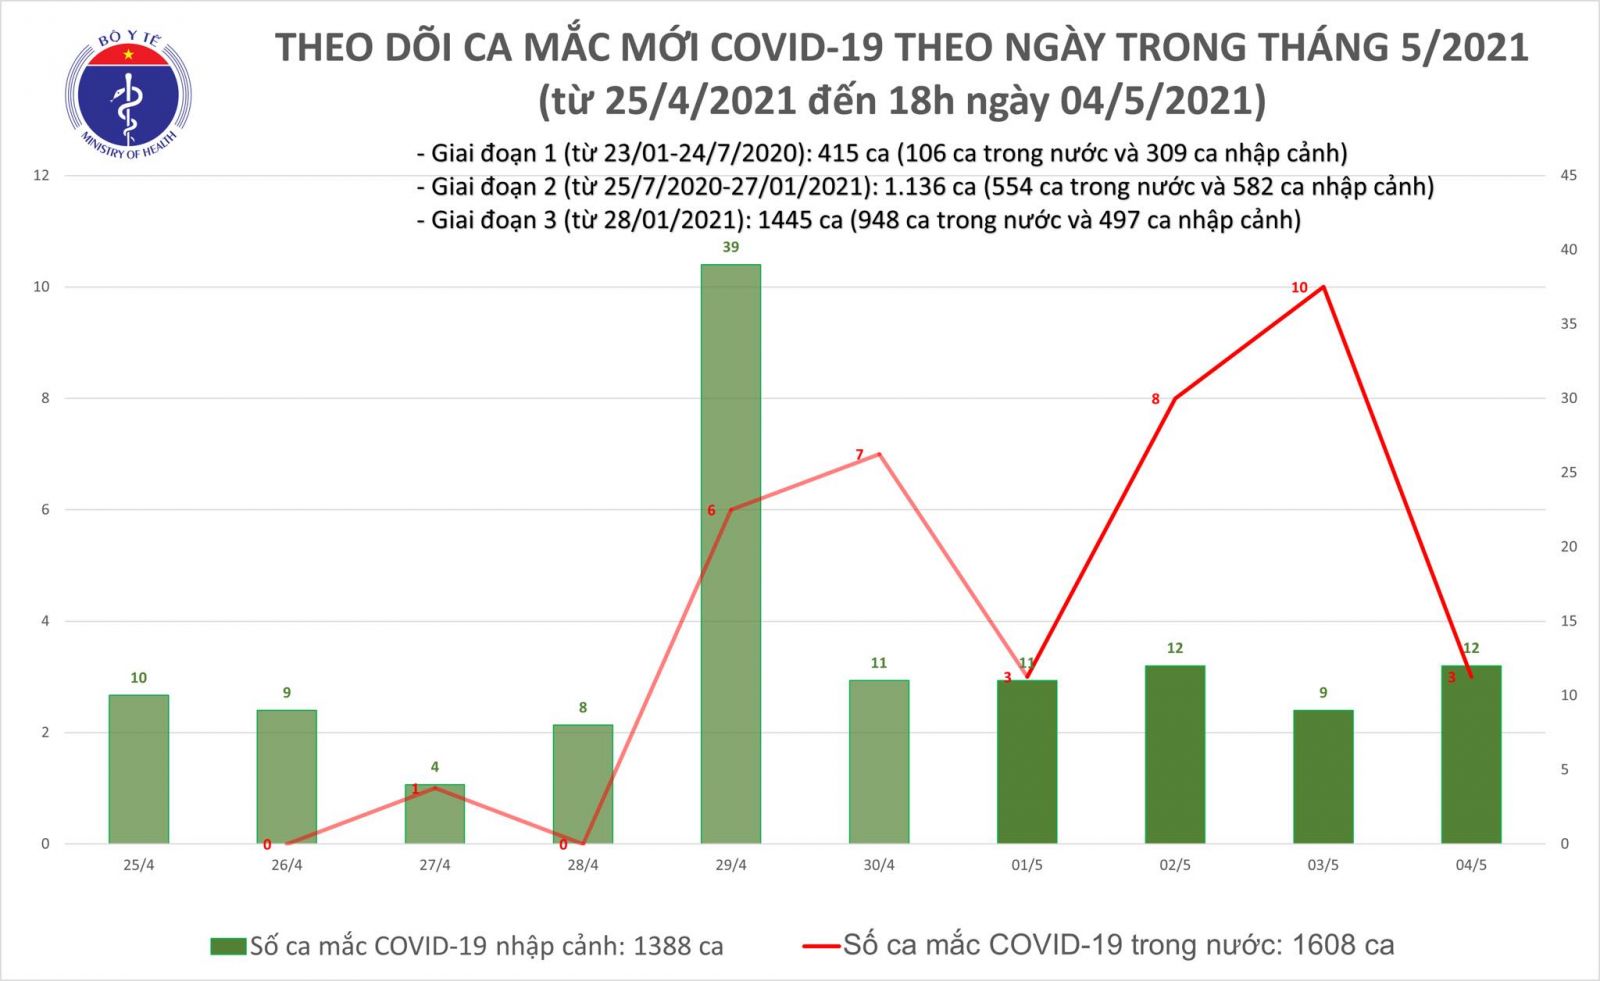 Thêm 11 ca mắc Covid-19, có 1 ca trong nước tại Đà Nẵng